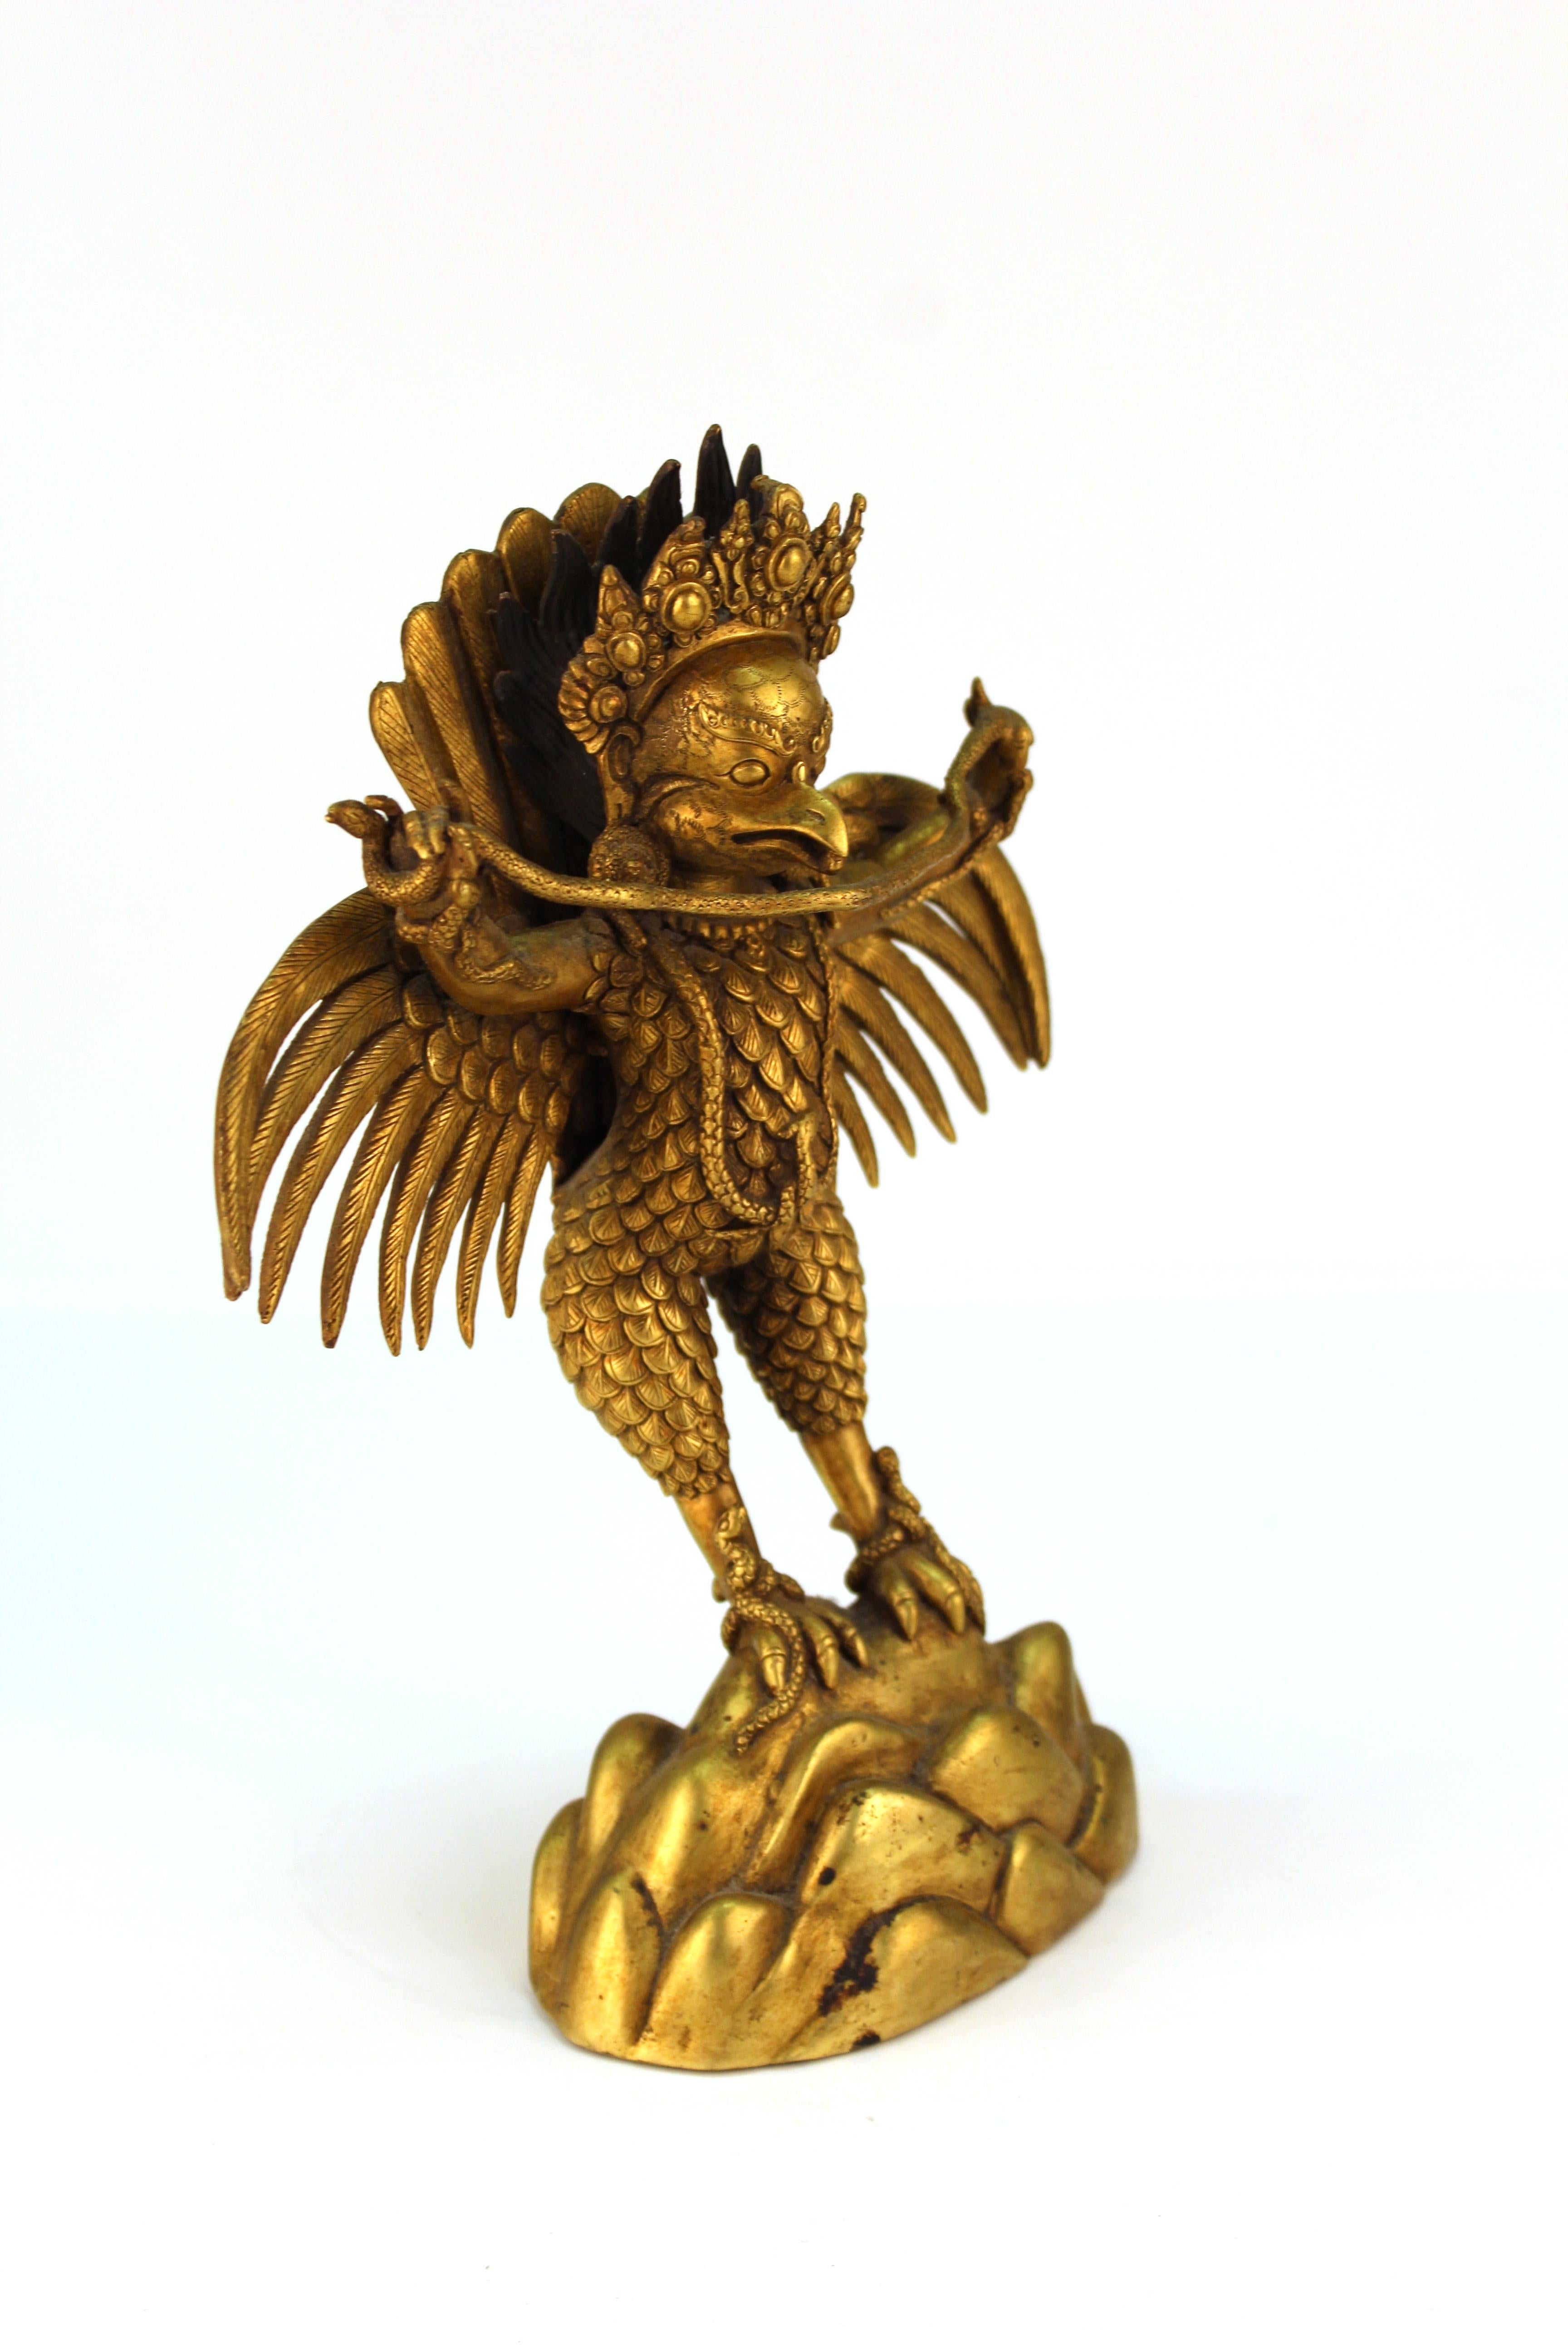 4" Asian Antique Tibet  Handmade brass Gilt  Garuda bird Buddha statue 